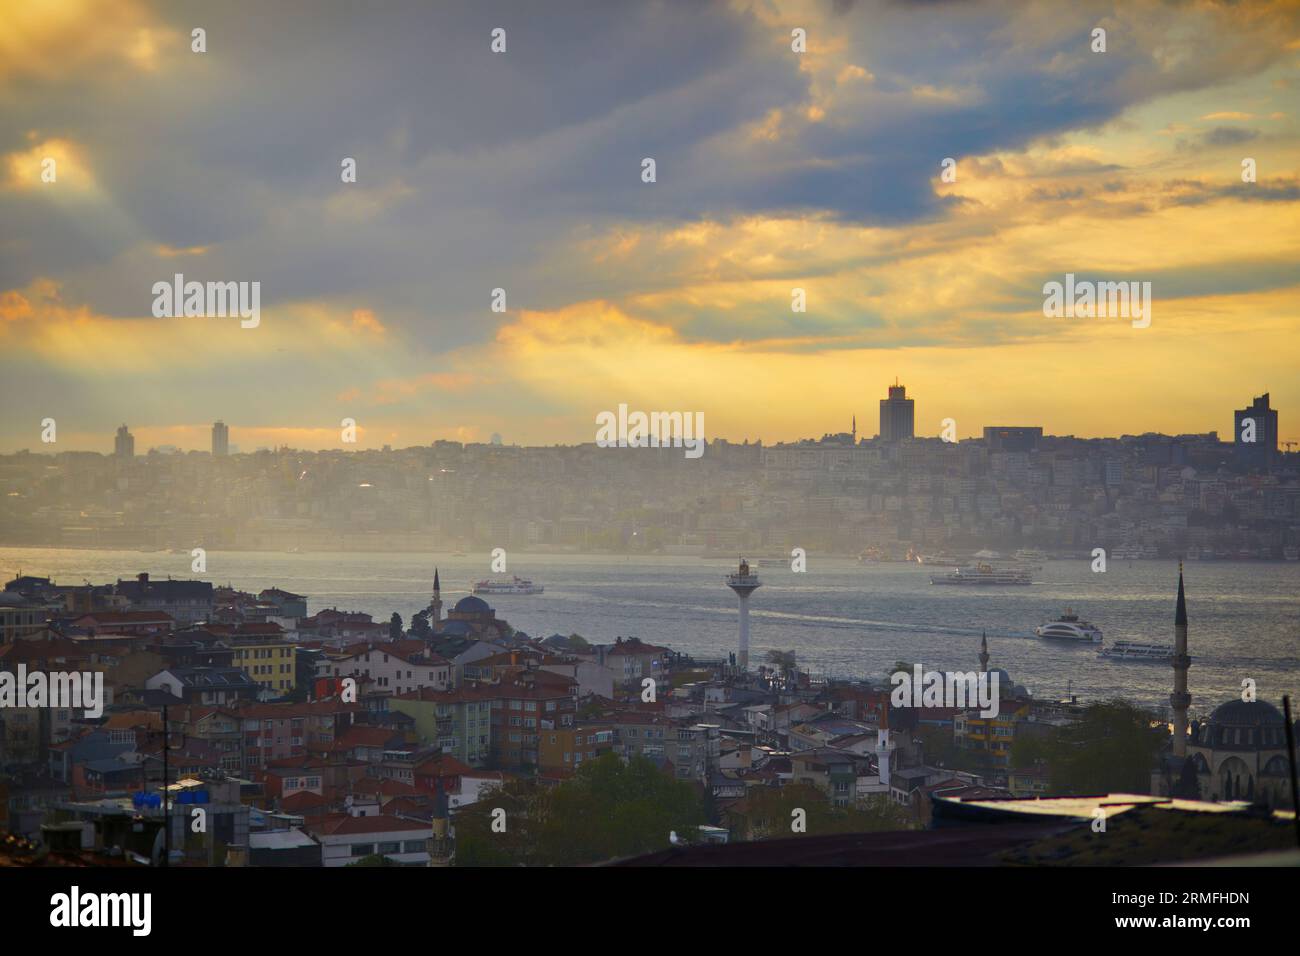 Vista panoramica del quartiere di Uskudar sul lato asiatico di Istanbul, Turchia con la Moschea Blu e Hagia Sophia all'orizzonte sullo stretto del Bosforo Foto Stock